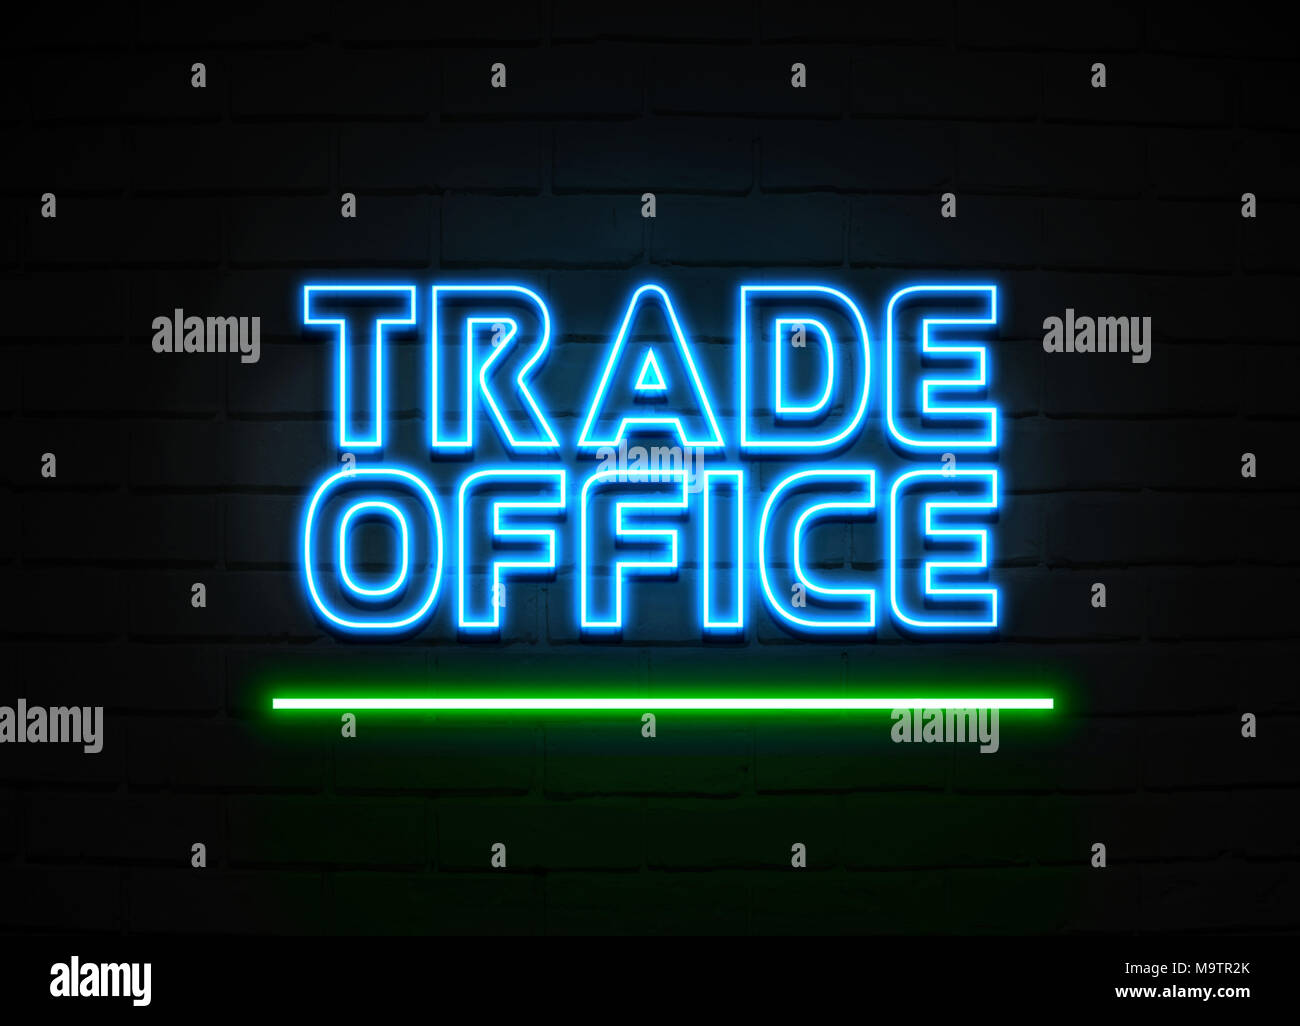 Handel Büro Leuchtreklame - glühende Leuchtreklame auf brickwall Wand - 3D-Royalty Free Stock Illustration dargestellt. Stockfoto